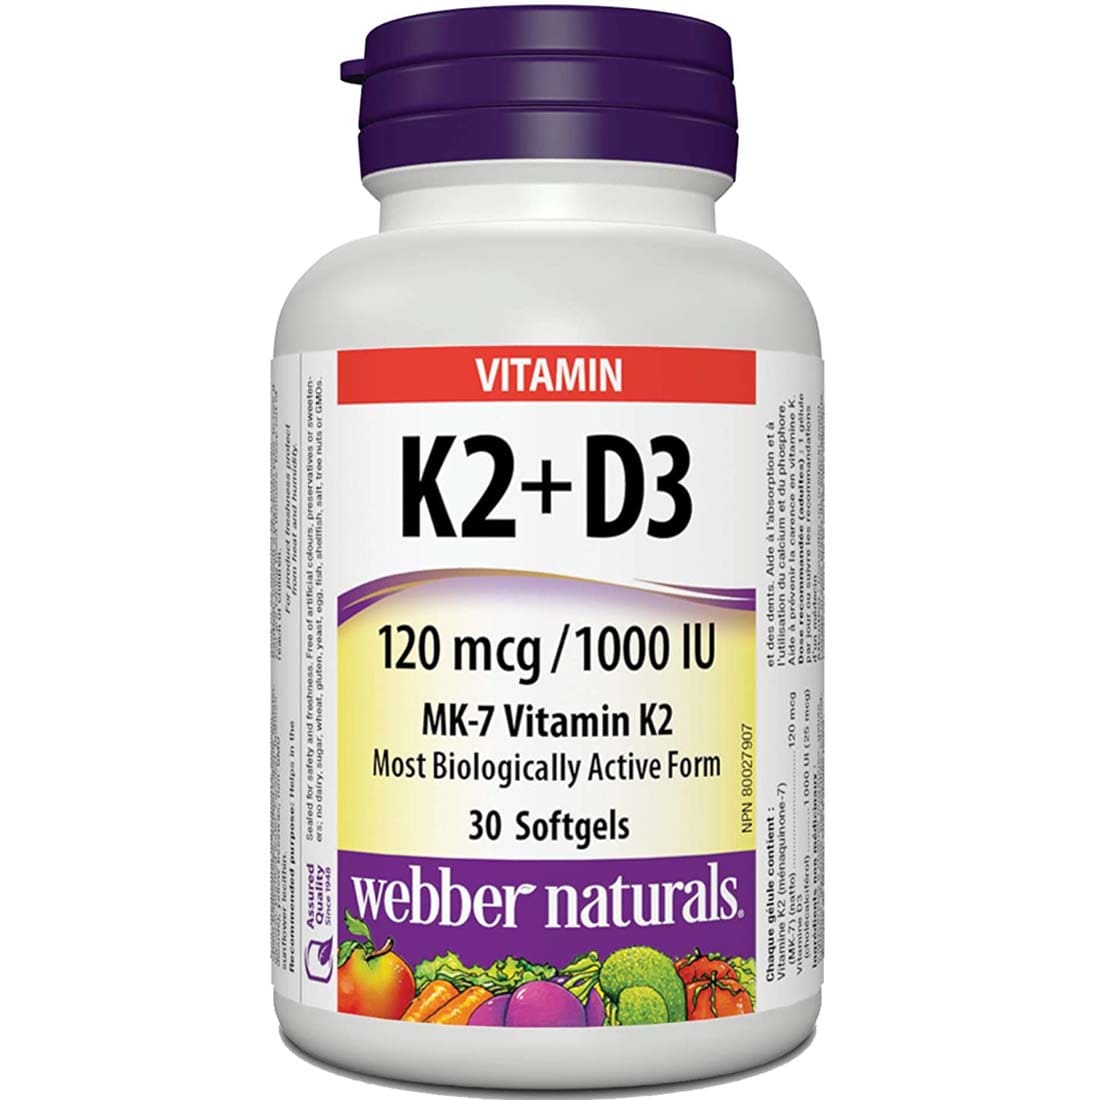 Webber Naturals Vitamin K2 and D3, 120 mcg/1,000 IU, 30 Softgels